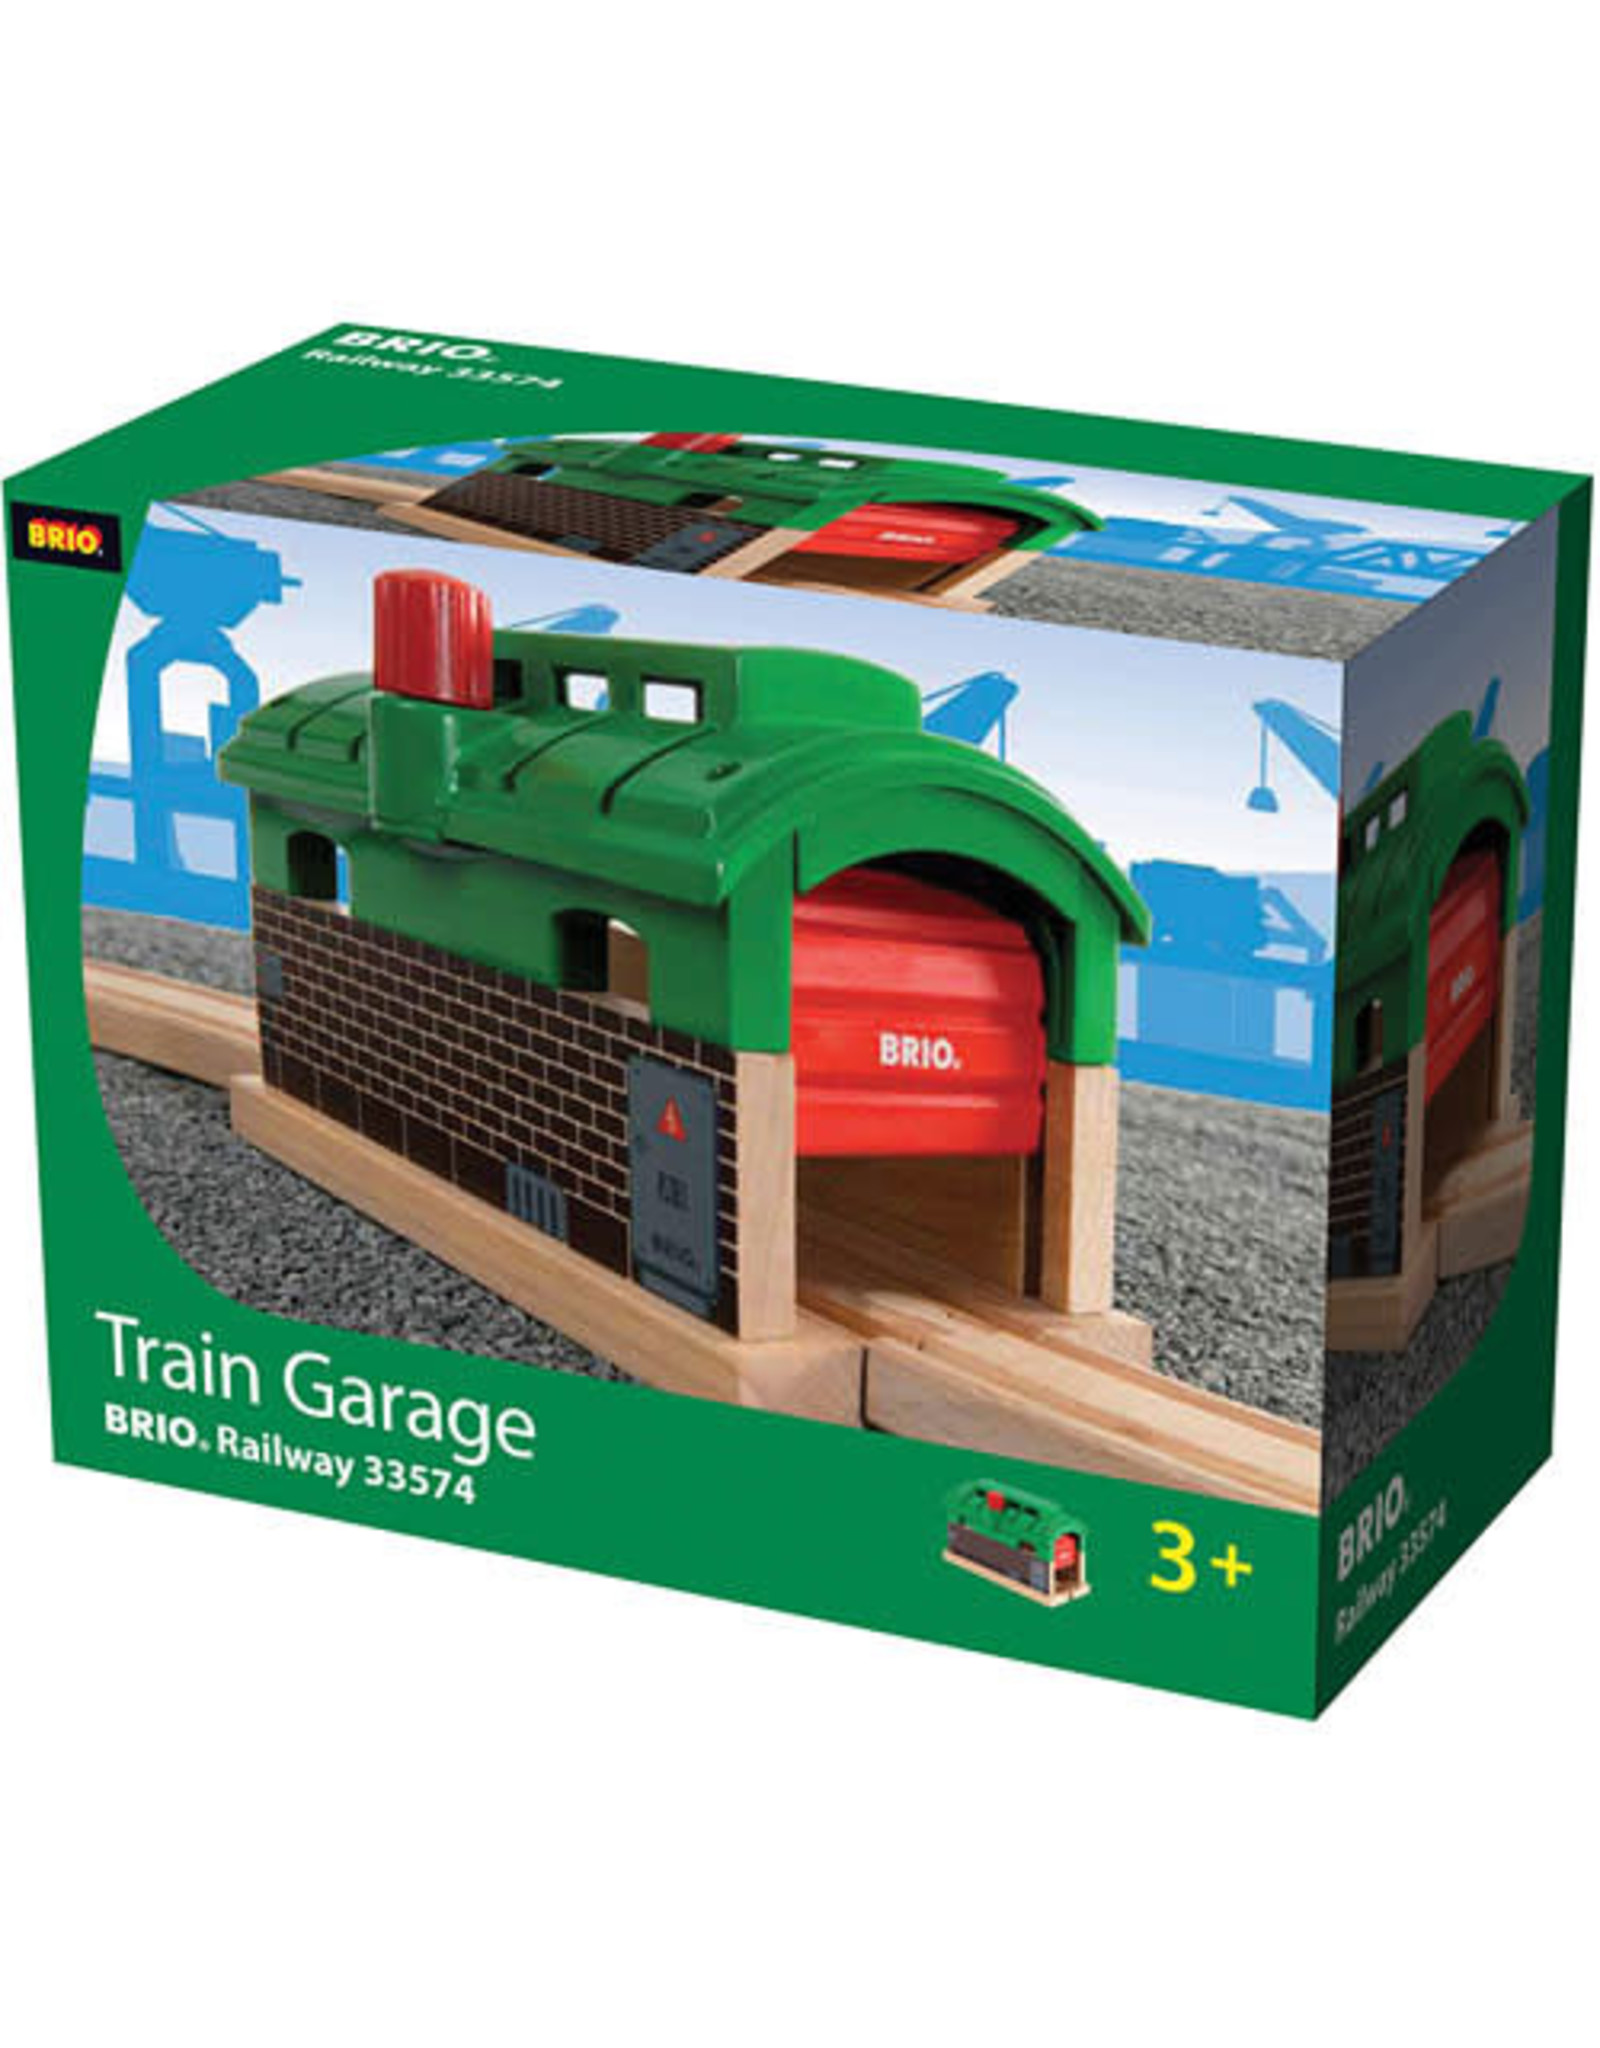 Train Garage